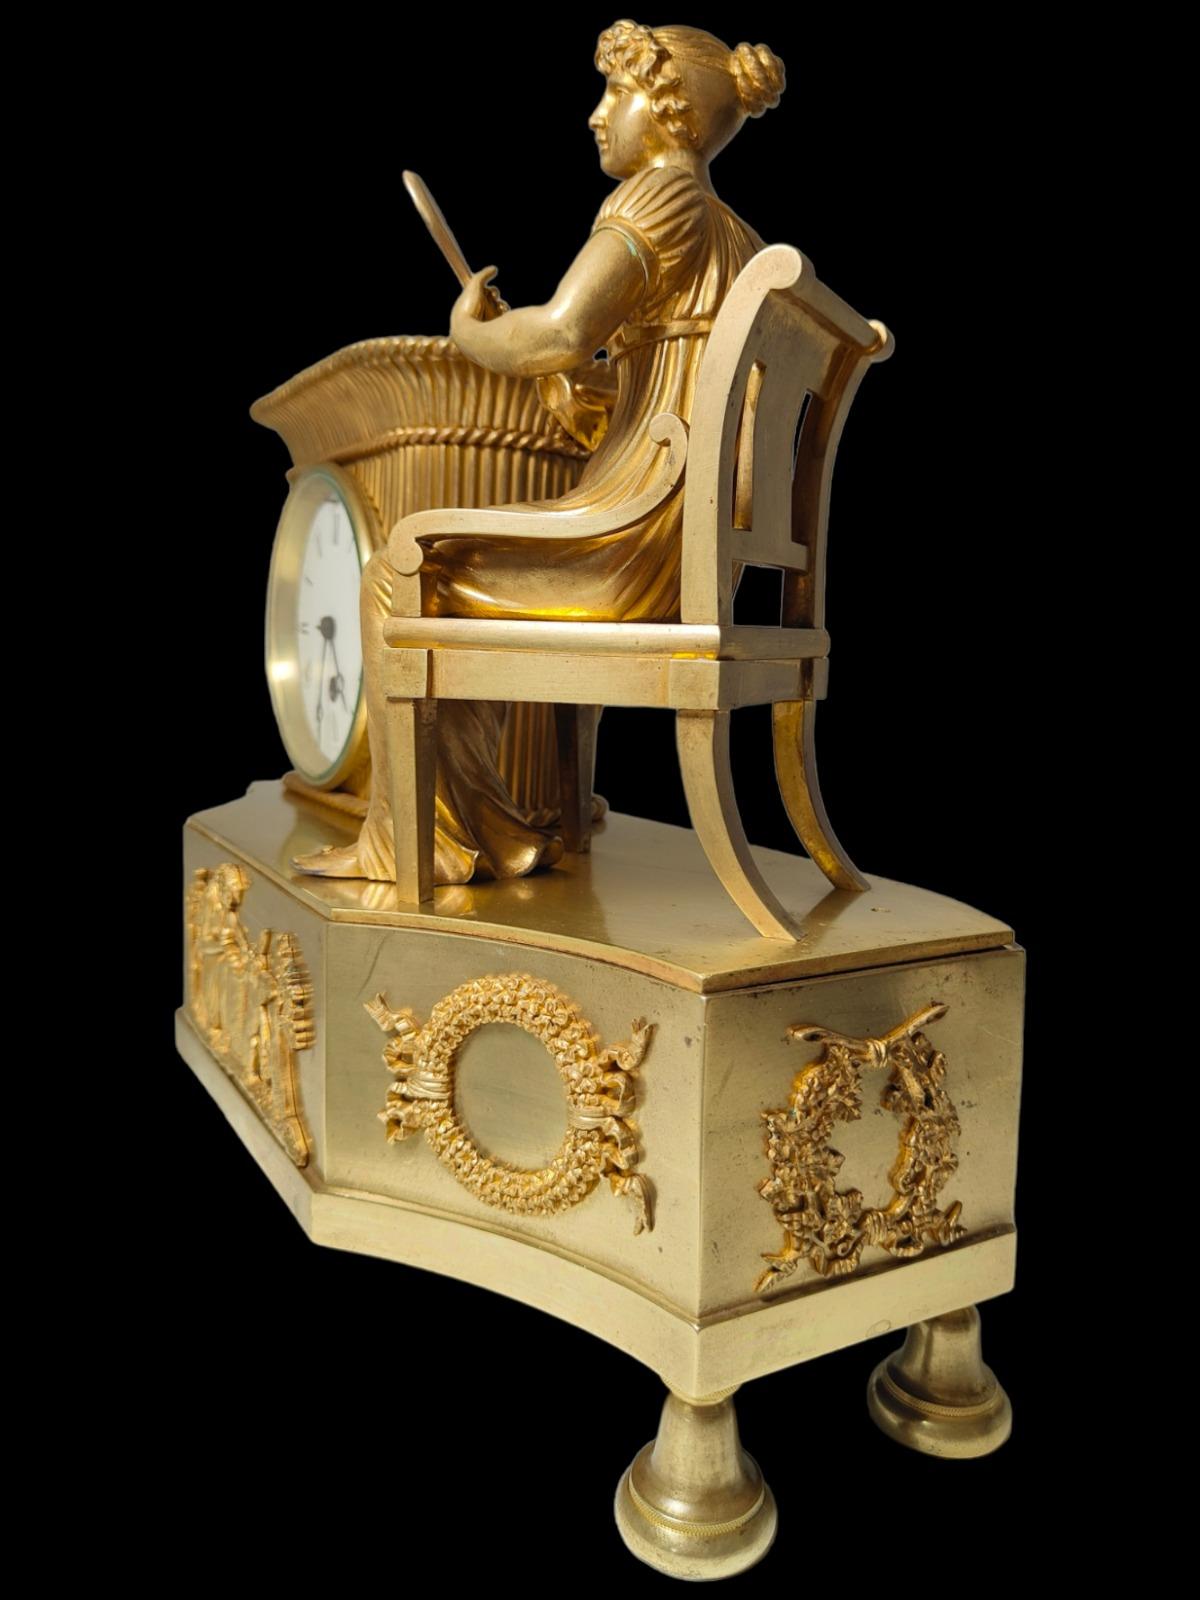 Elegante Bronzeuhr aus dem 19. Jahrhundert.
Französische Uhr des 19. Jahrhunderts aus vergoldeter Bronze. Die Maschine funktioniert und hat ihr Pendel und den Schlüssel. Schwierig zu erkennendes Modell. Maße: 35x32x15 cm.
guter Zustand.